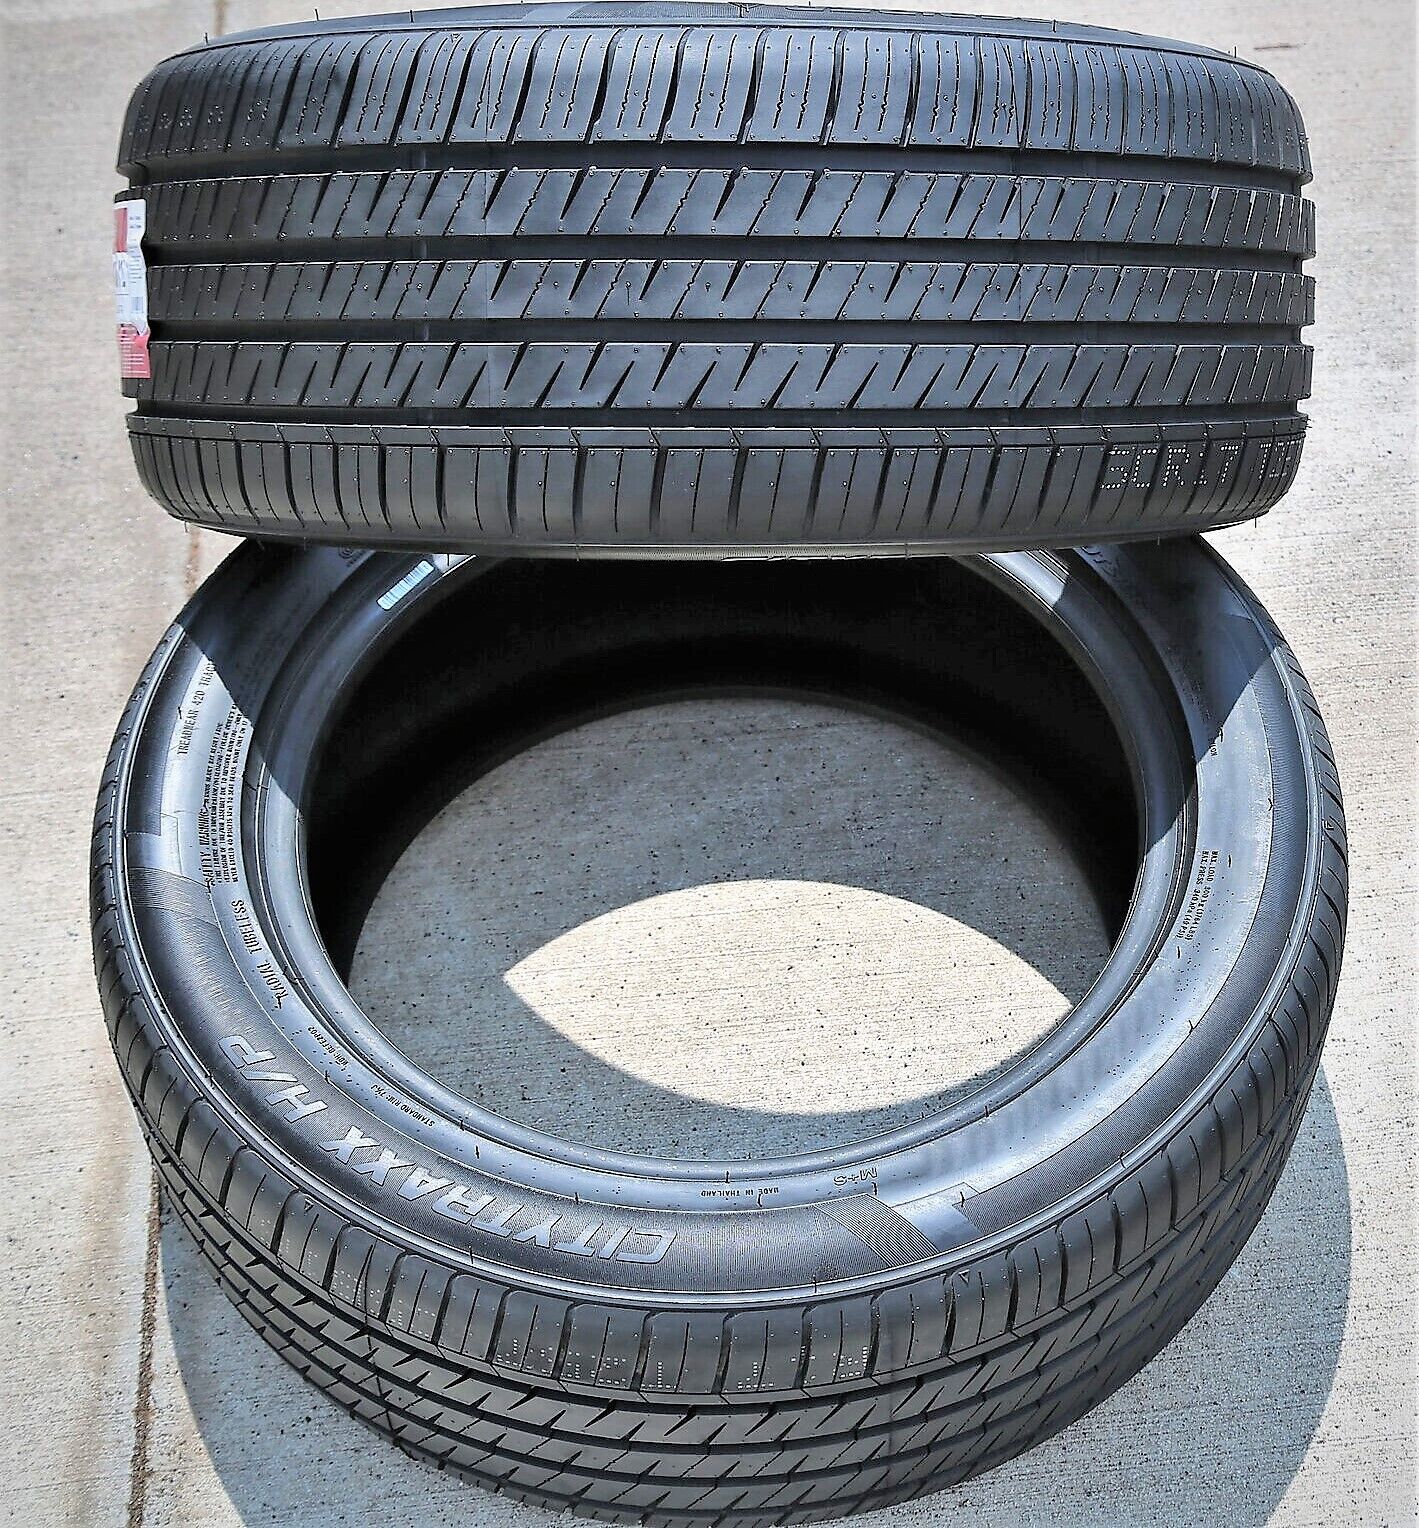 2 Tires Landspider Citytraxx H/P 225/55ZR17 101W XL A/S High Performance